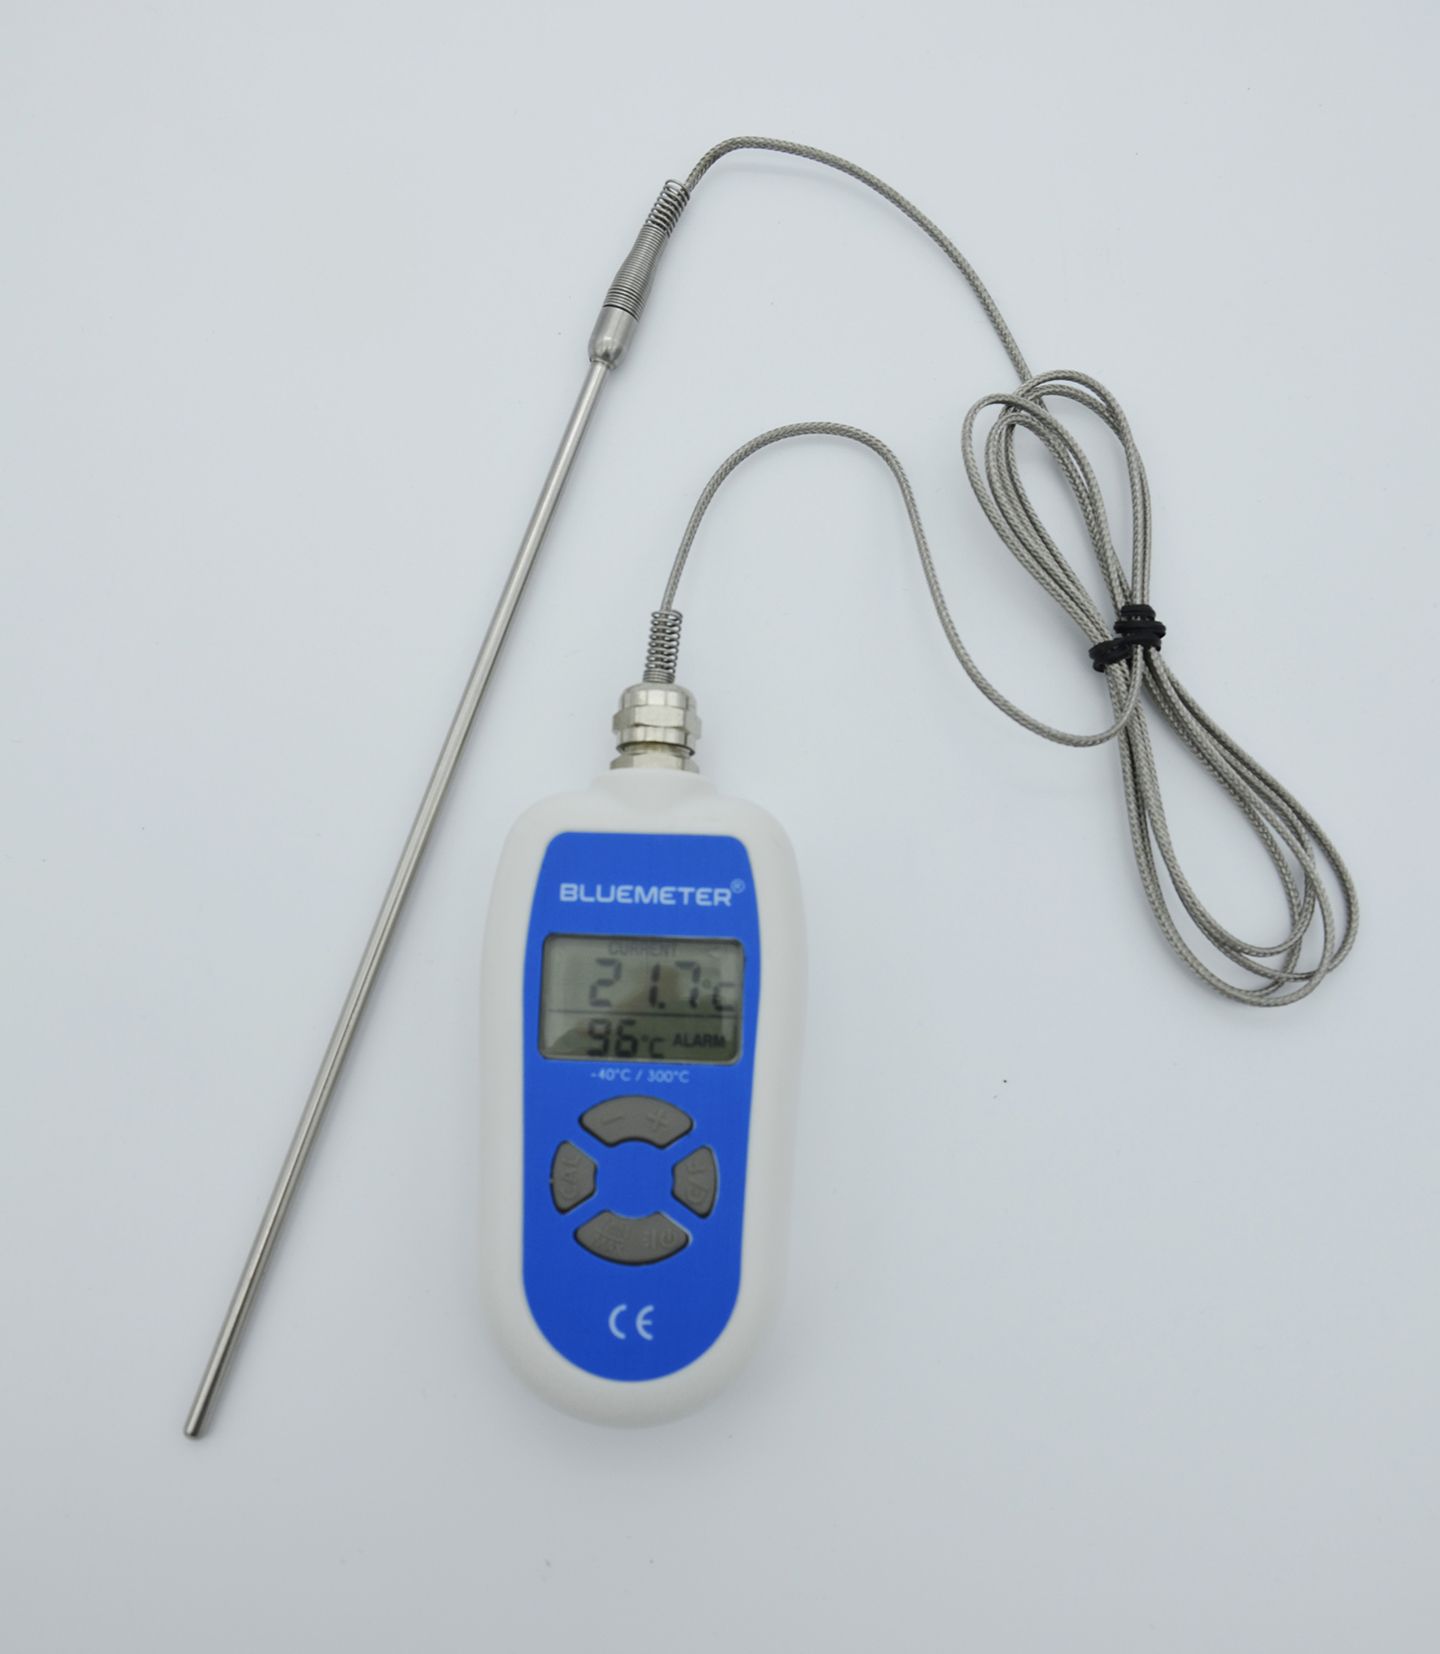 Thermomètre étanche - Matériel de laboratoire